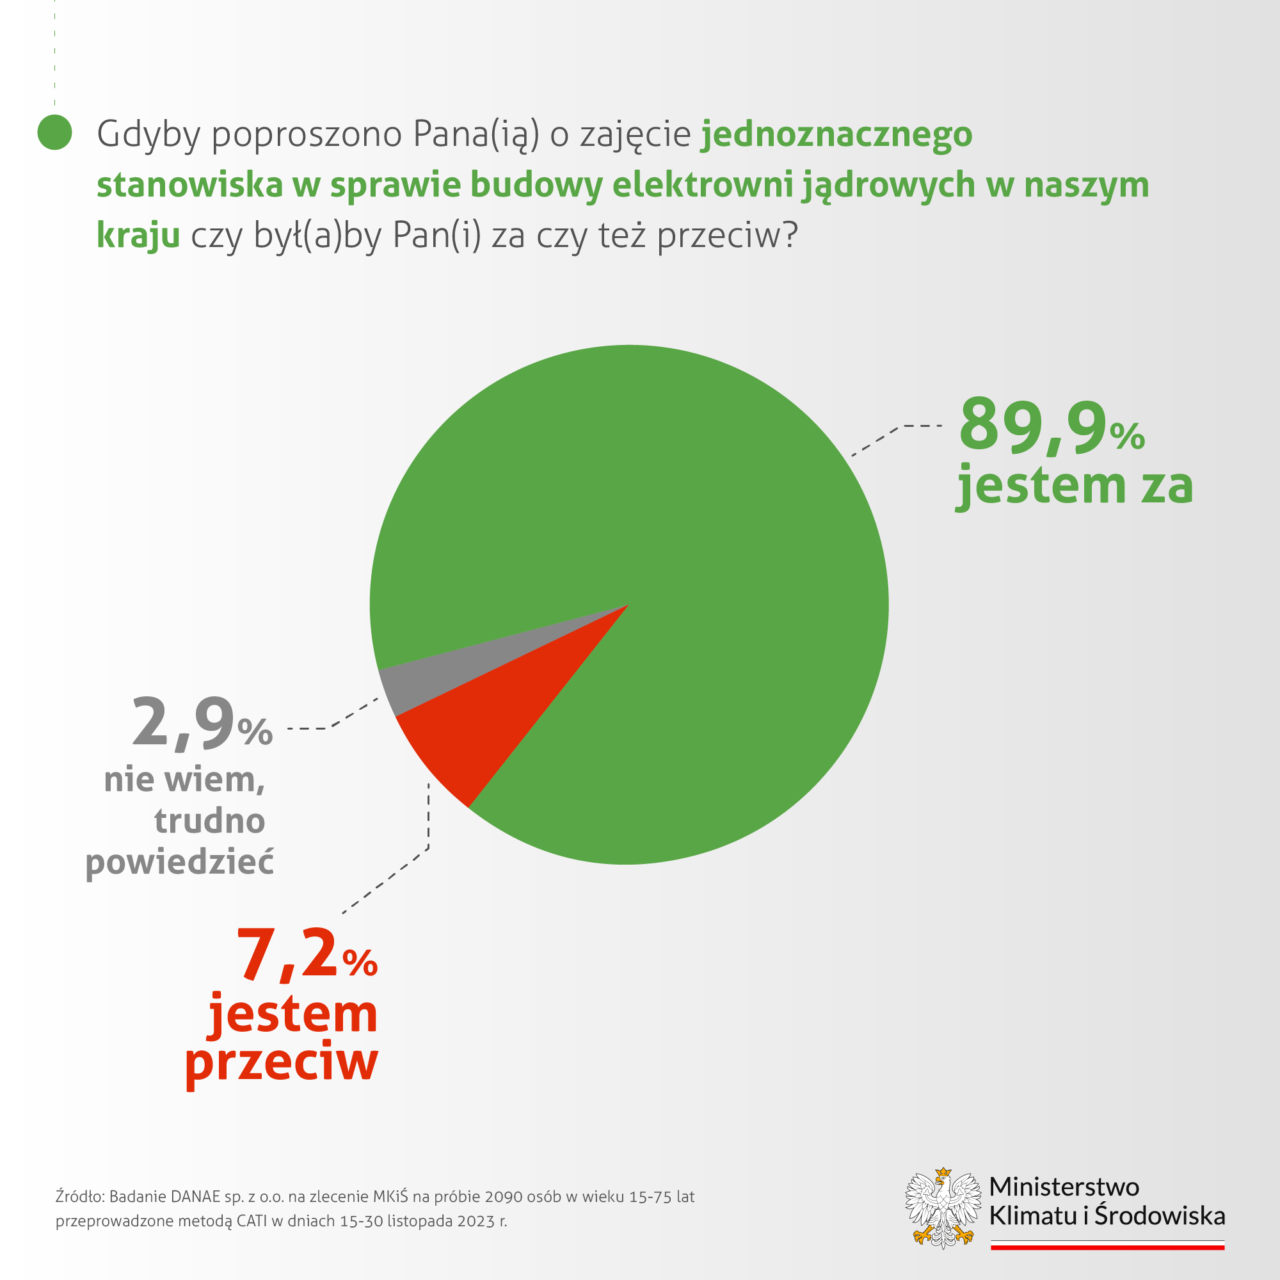 Wykres kołowy prezentujący wyniki ankiety na temat tego, czy ludzie chcą, aby powstały elektrownie atomowe w Polsce z podziałem na odpowiedzi: 89,9% za, 7,2% przeciw, 2,9% niezdecydowanych. Na dole informacja o źródle danych i logo Ministerstwa Klimatu i Środowiska.